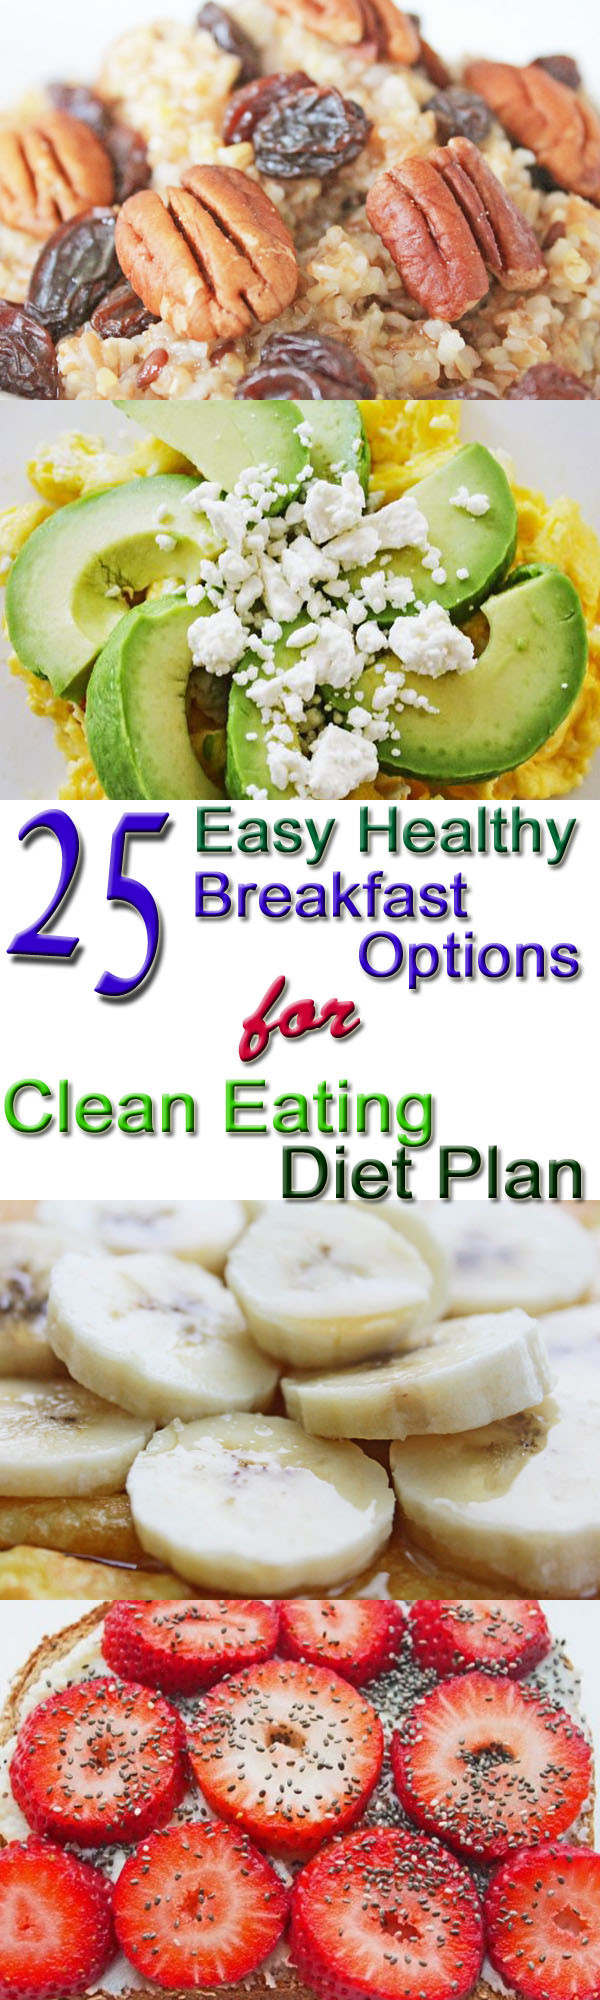 Easy Healthy Breakfast Idea
 25 Healthy Breakfast Options